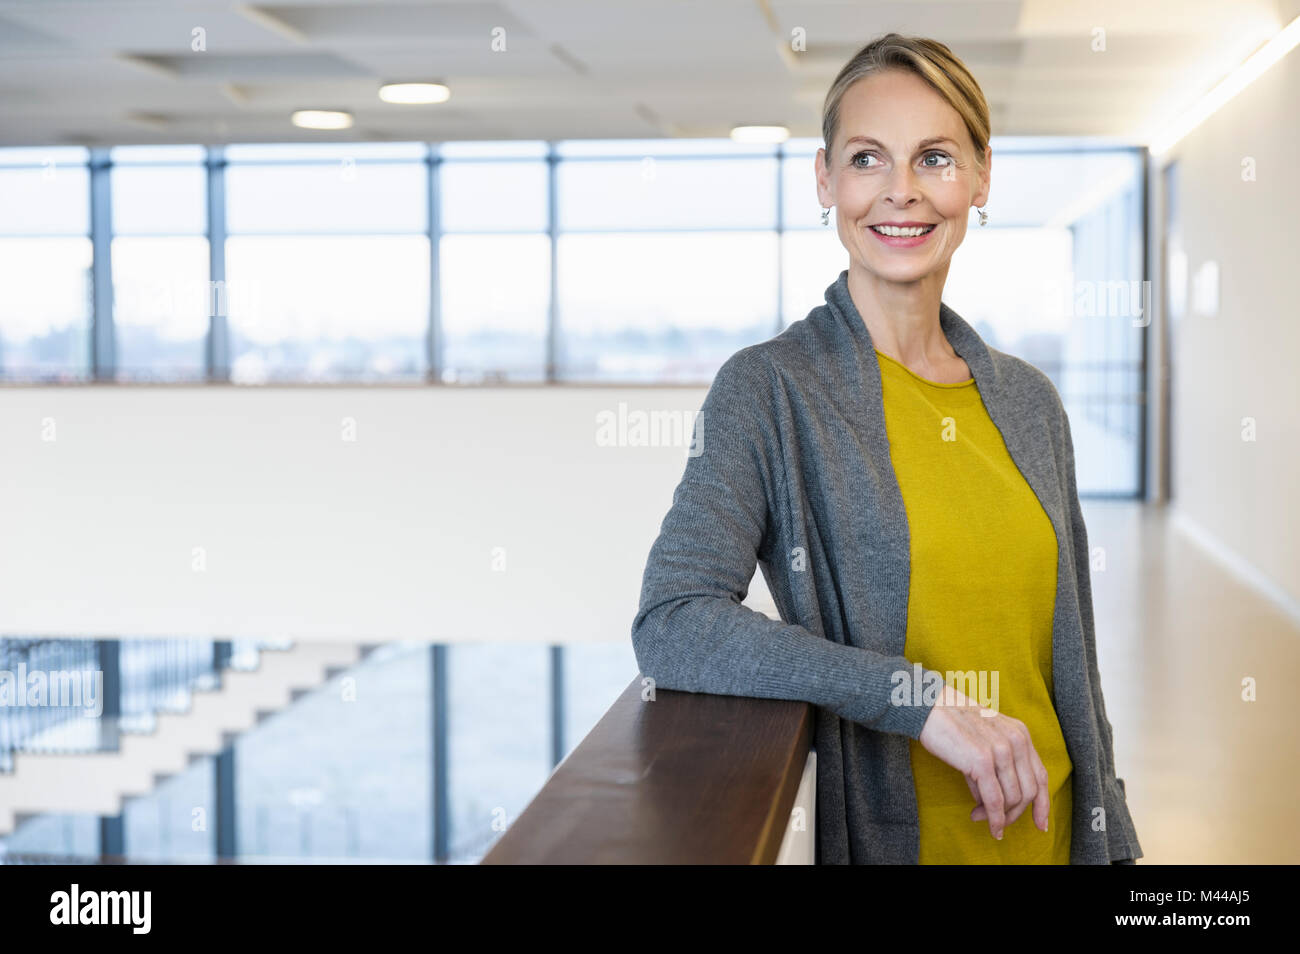 Confident mature businesswoman in office atrium Stock Photo